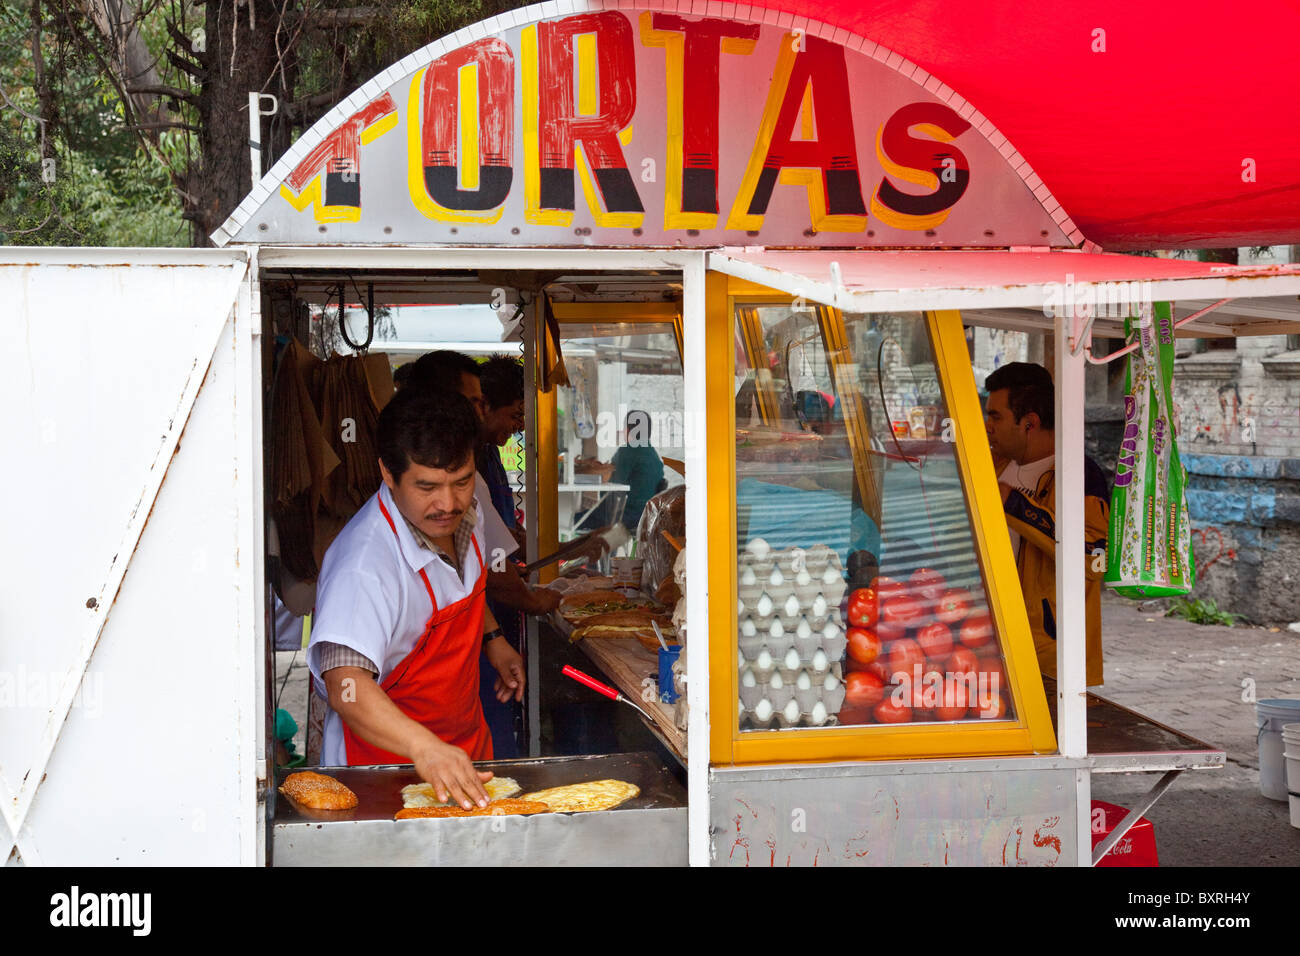 Tortas cart in Mexico City, Mexico Stock Photo